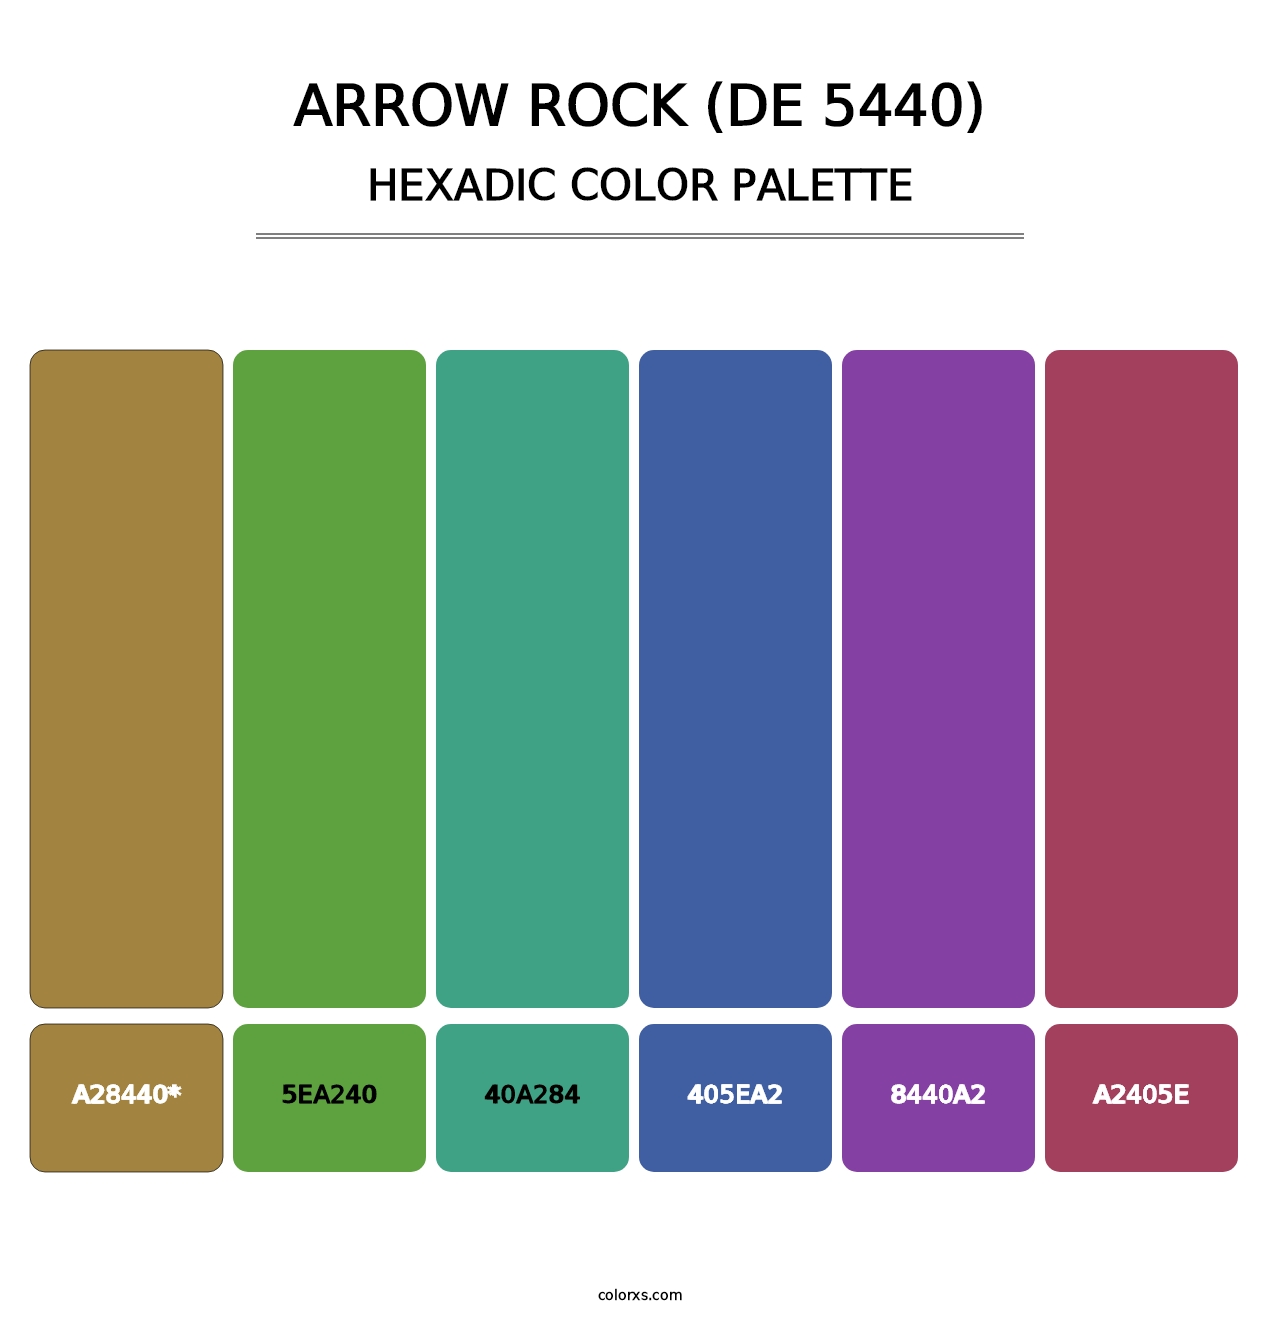 Arrow Rock (DE 5440) - Hexadic Color Palette